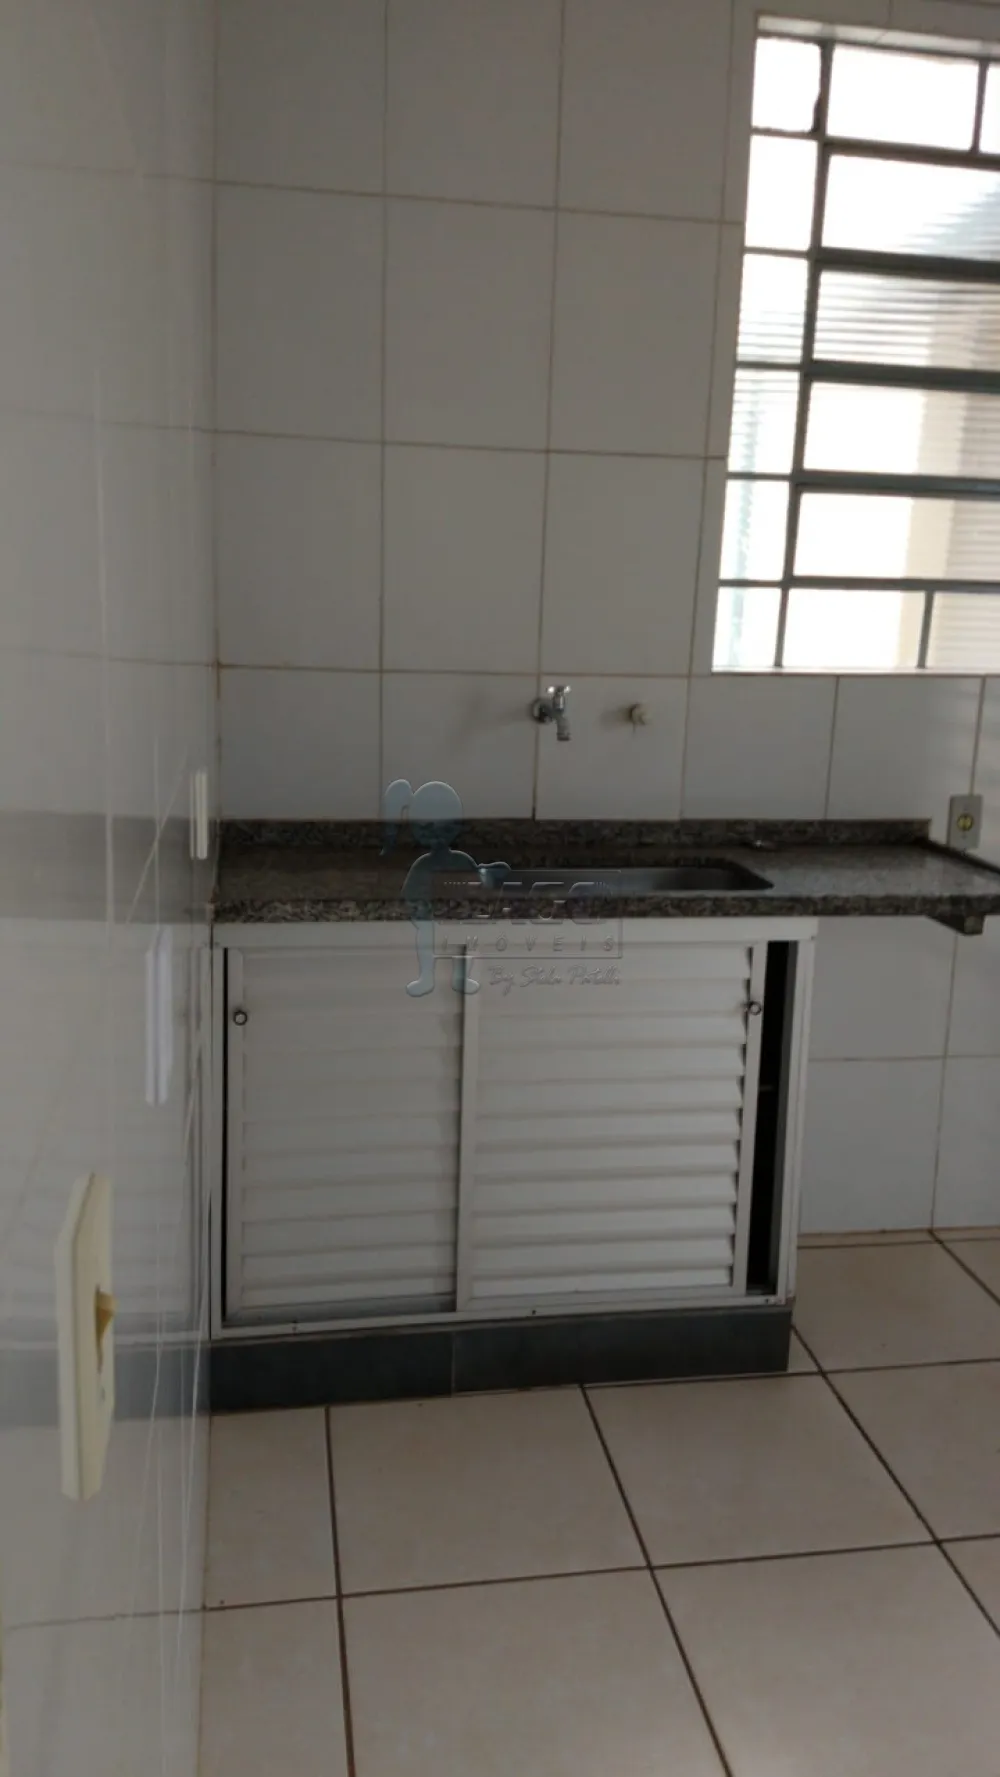 Comprar Casa / Padrão em Ribeirão Preto R$ 270.000,00 - Foto 7